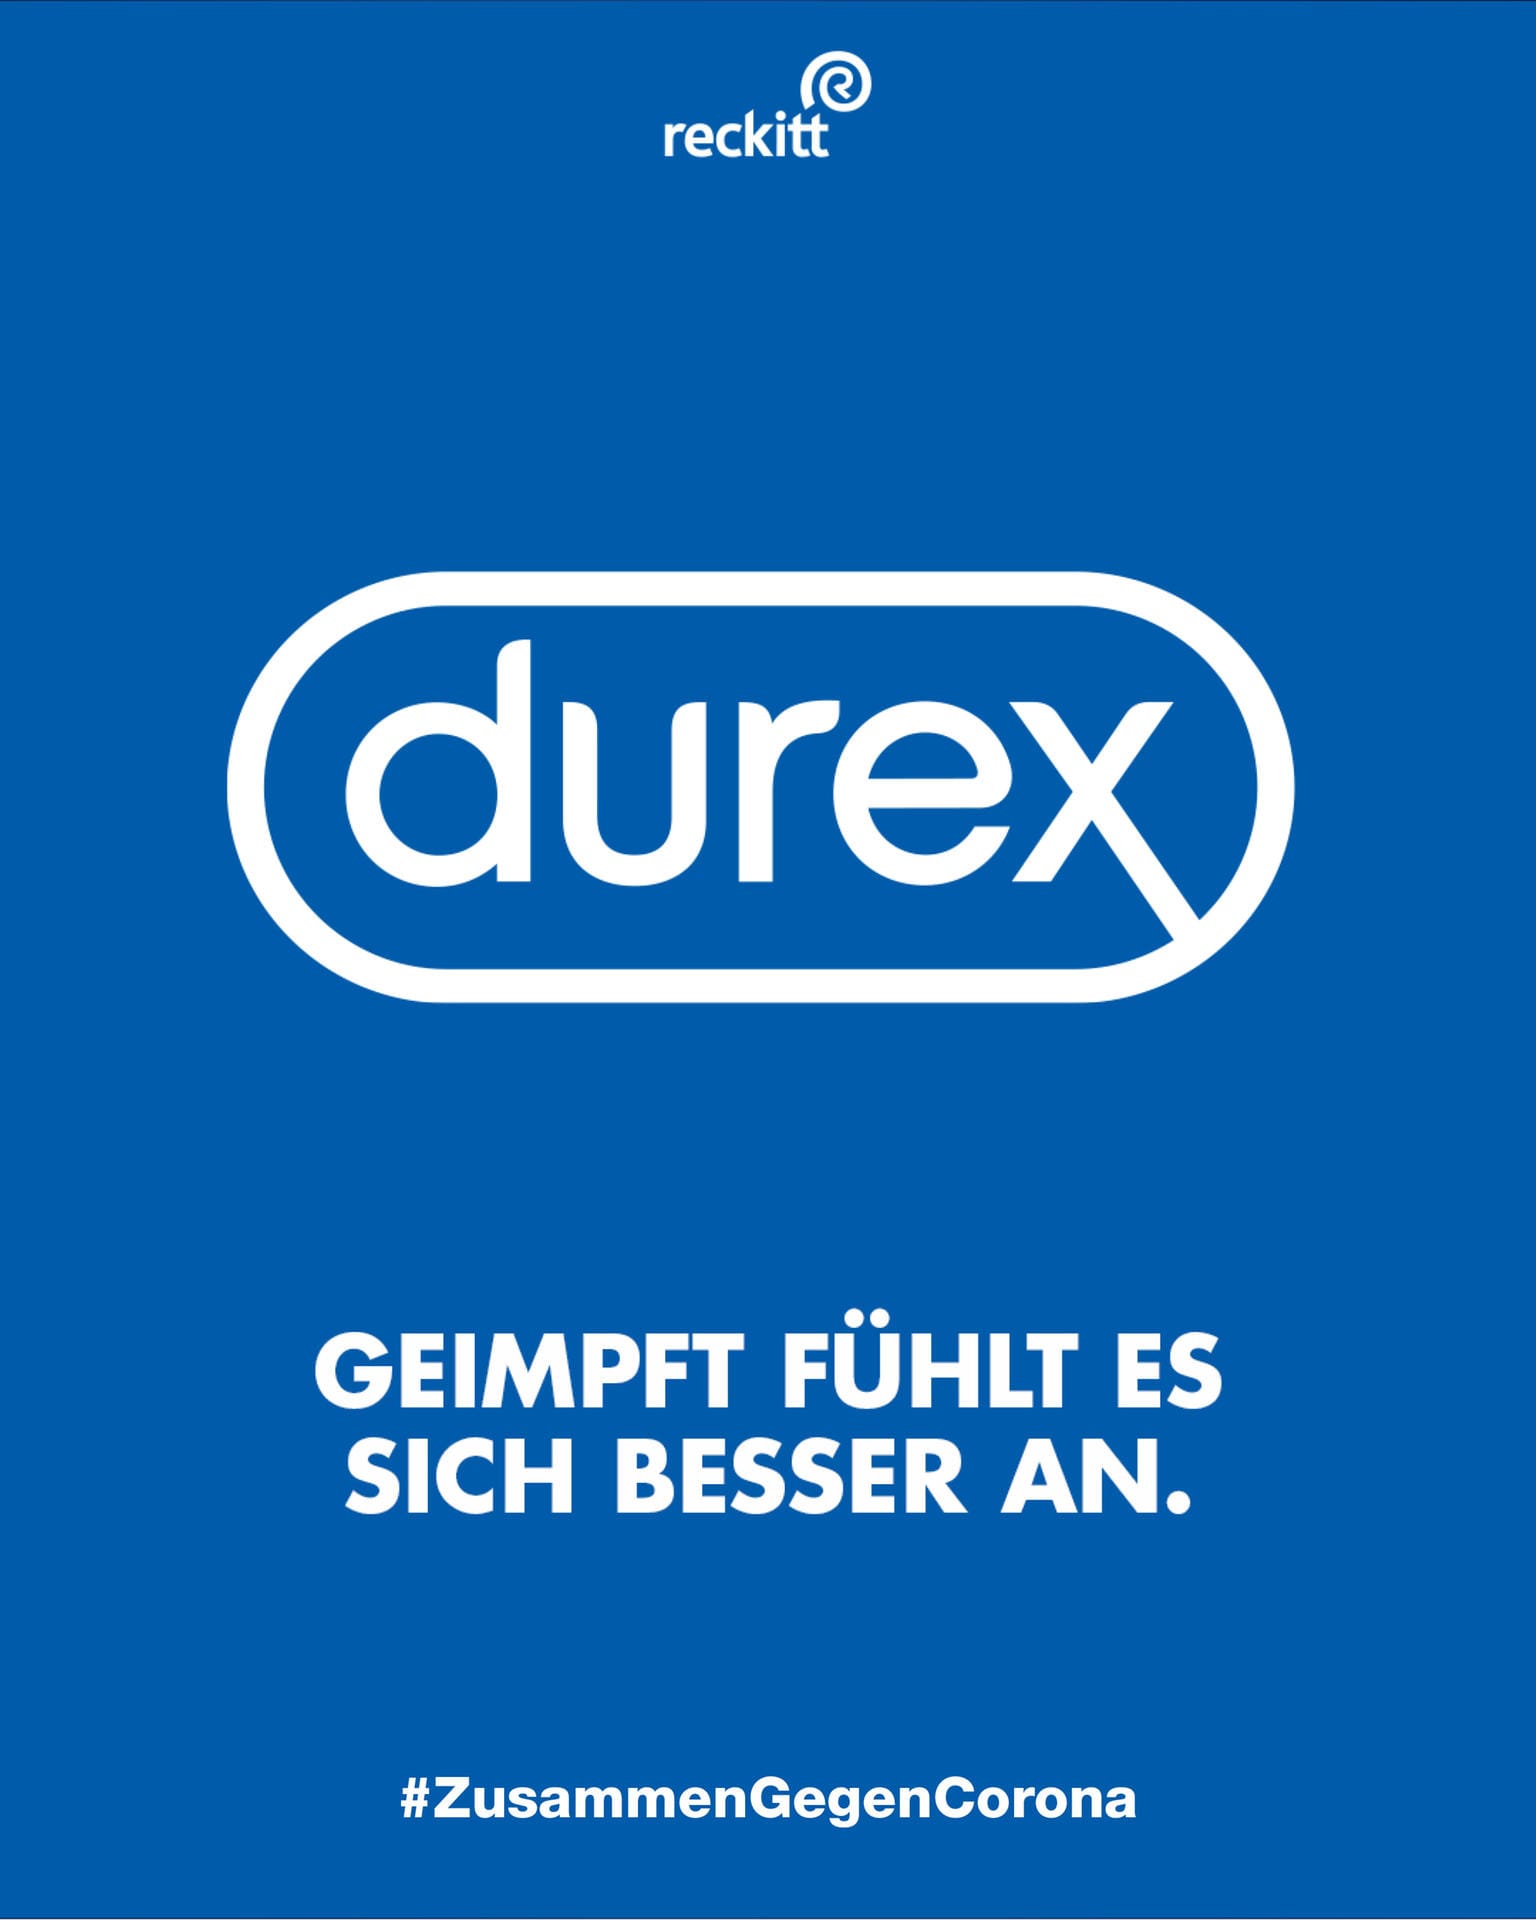 "Geimpft fühlt es sich besser an", meint Durex.